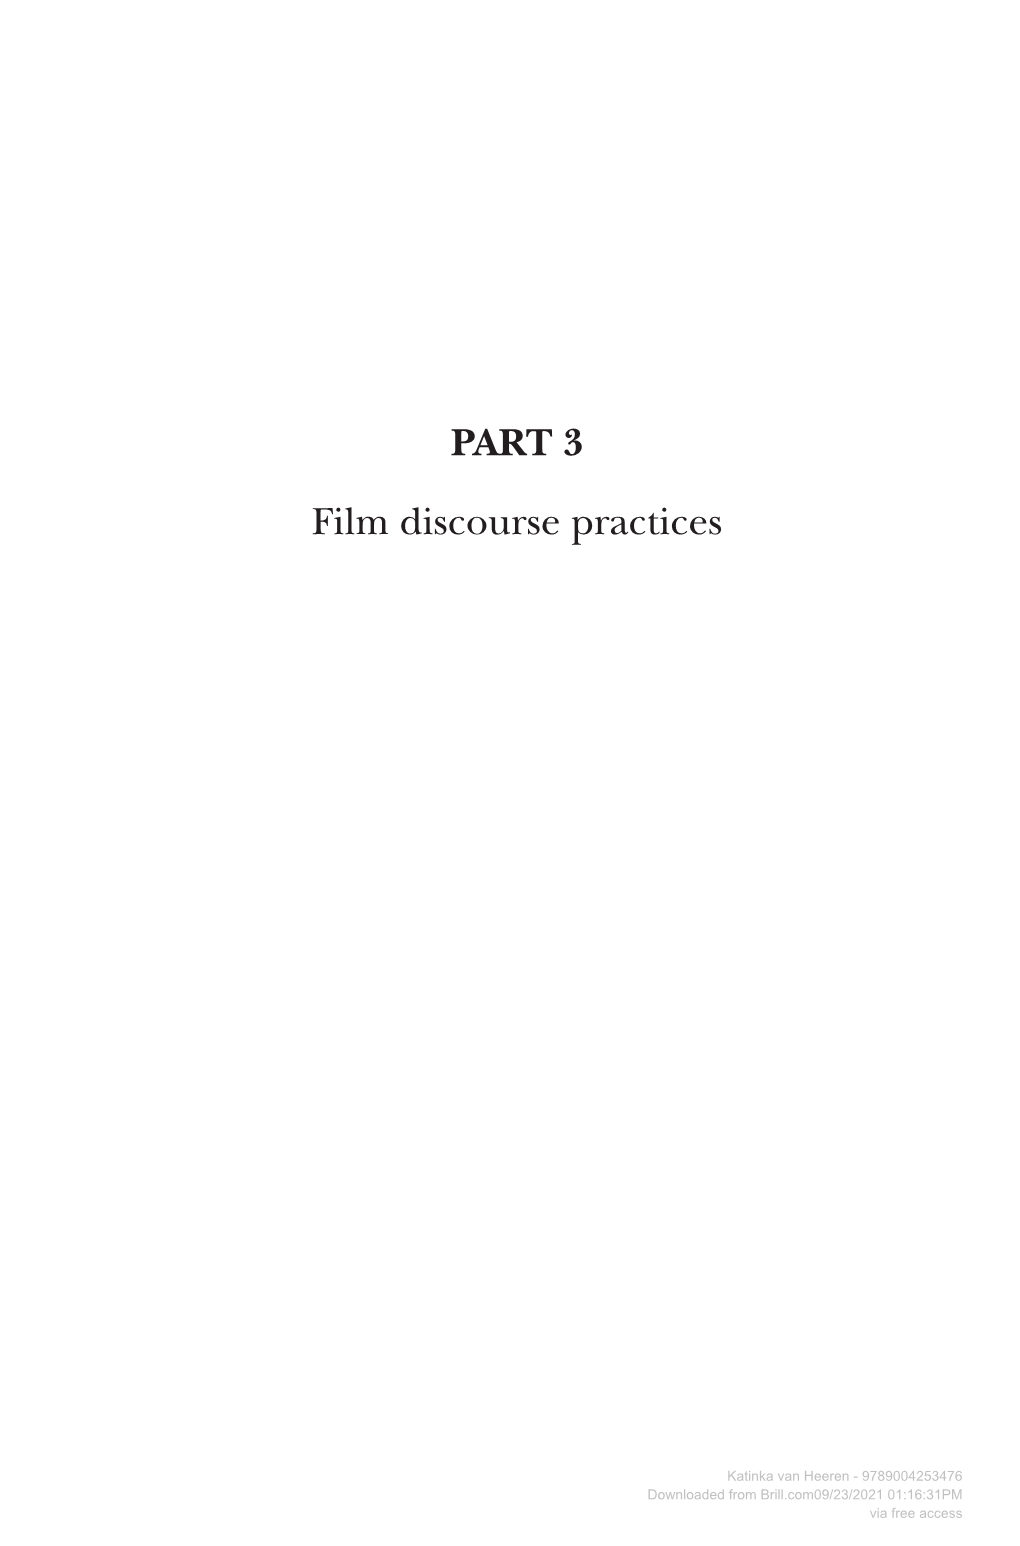 PART 3 Film Discourse Practices